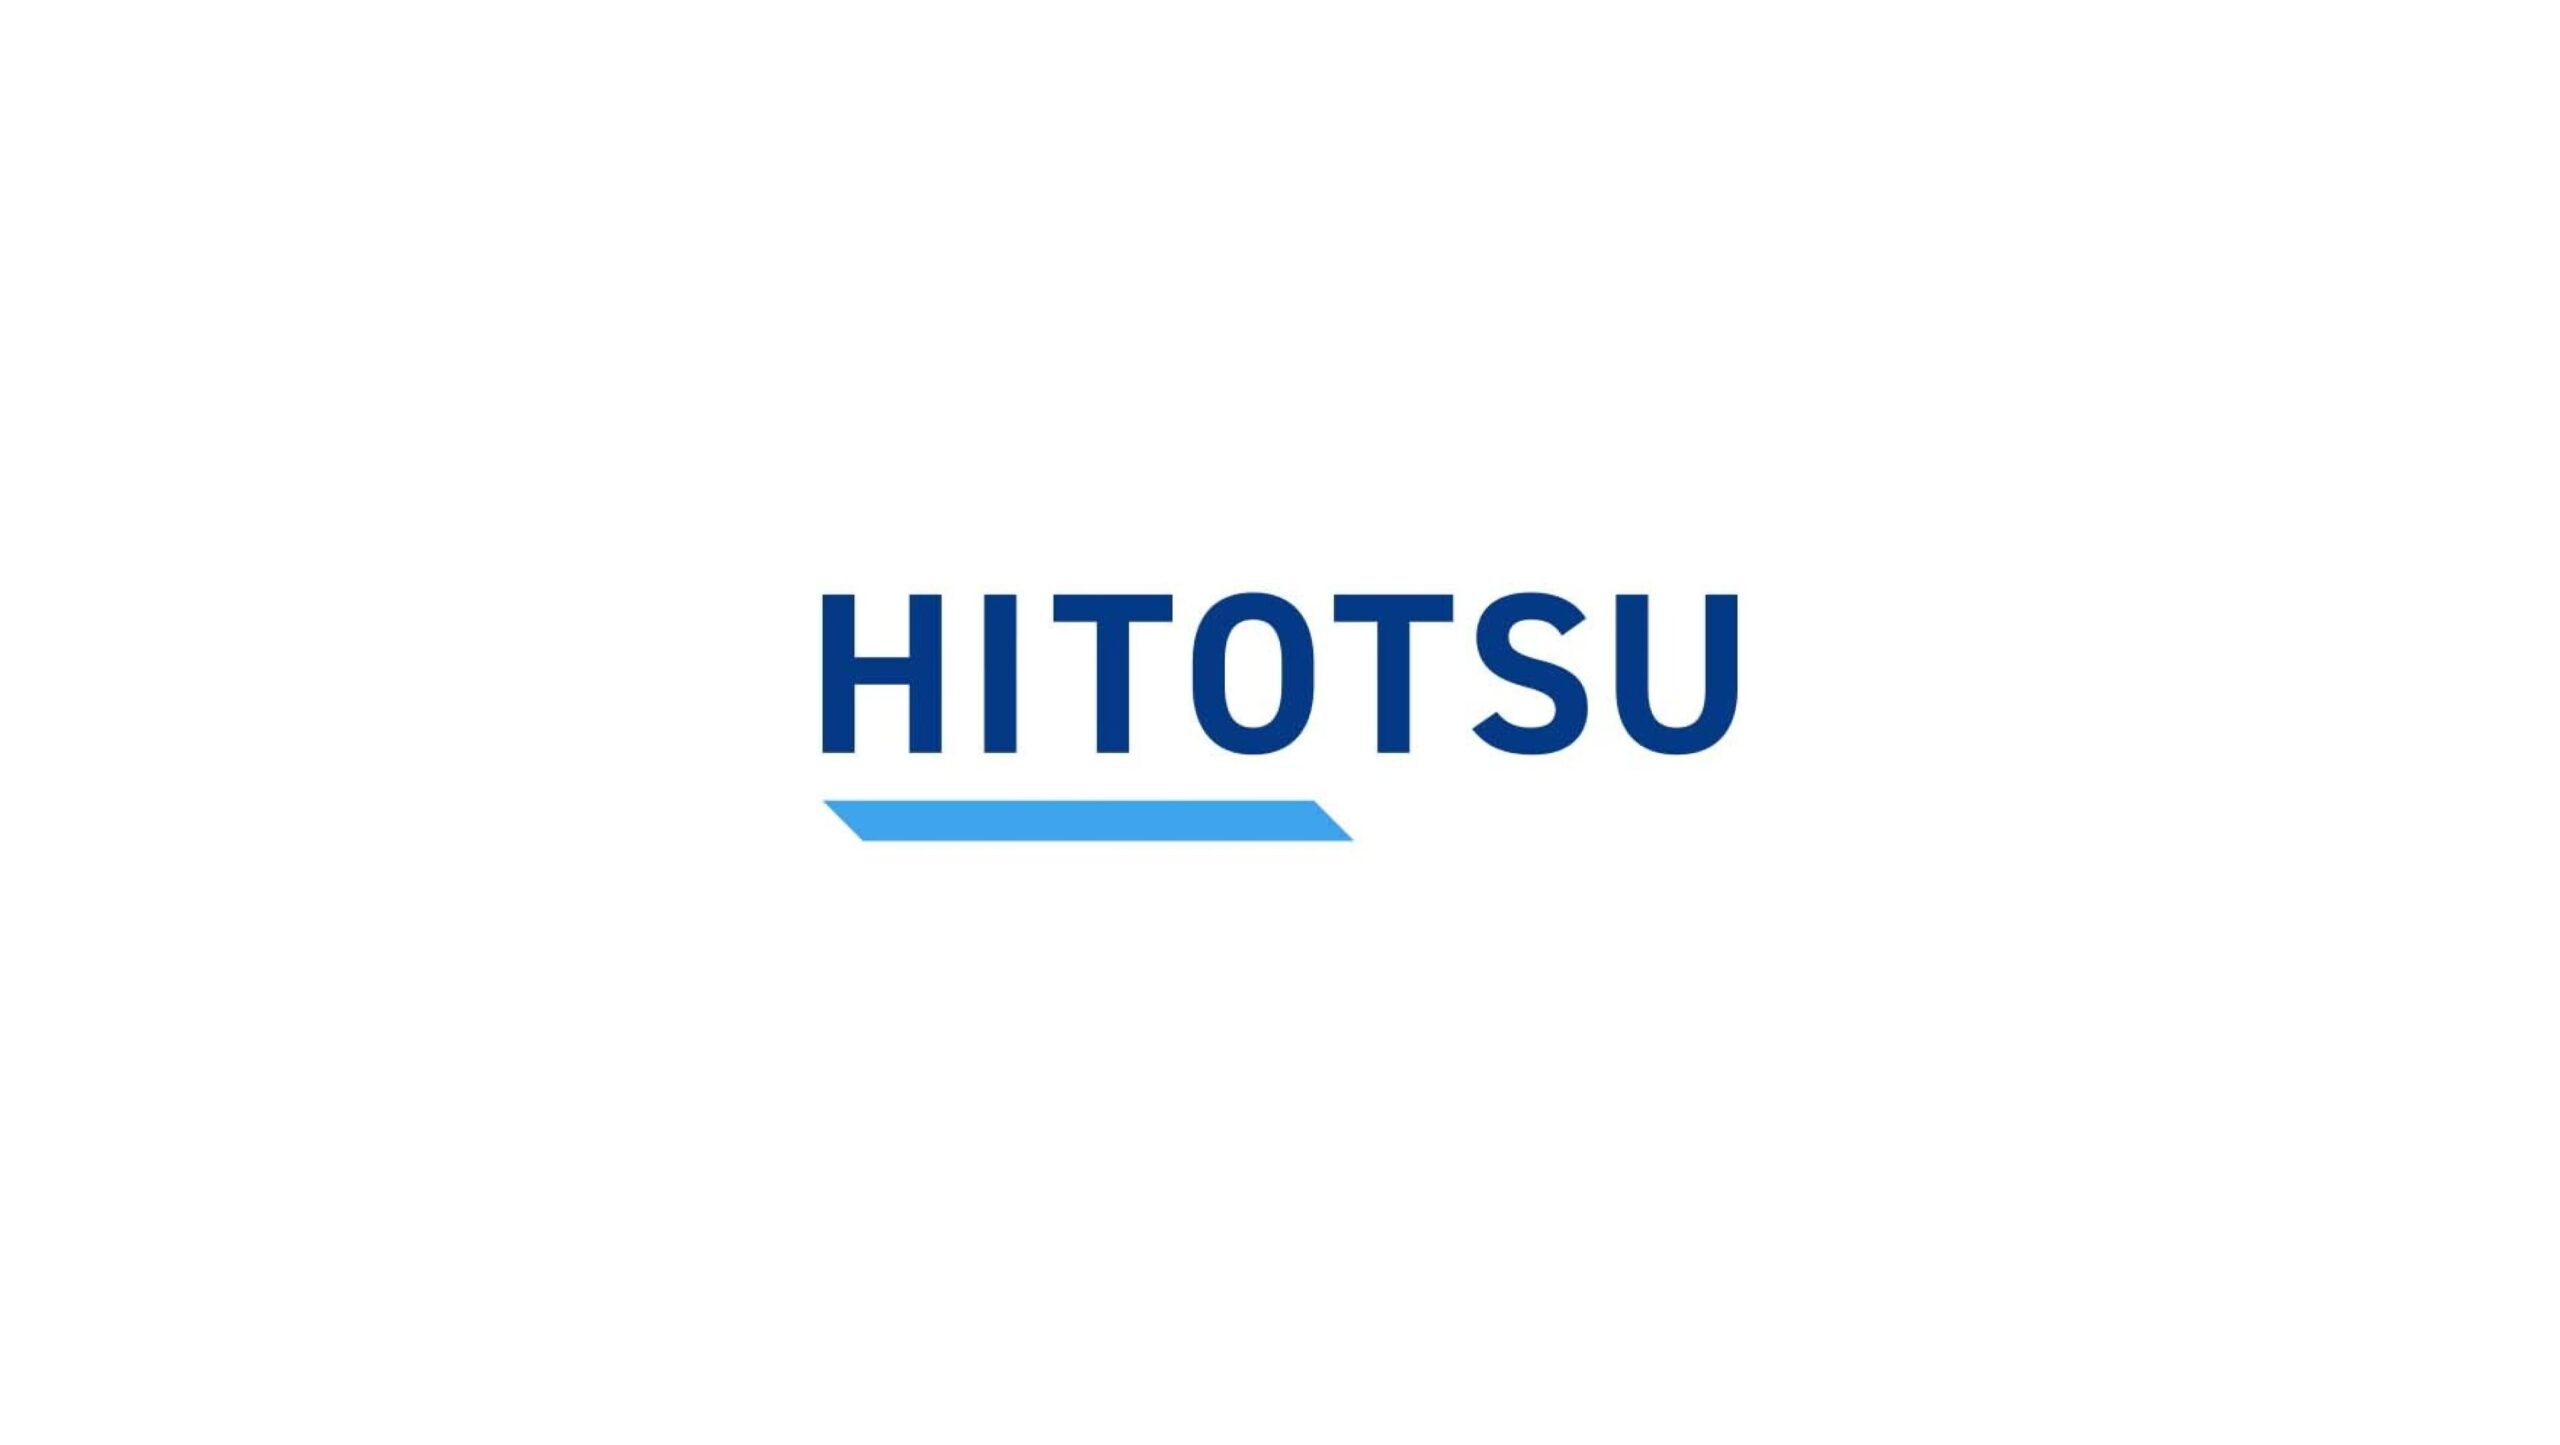 医療機器業界のDXサービスを提供するHITOTSU株式会社がシリーズA1ラウンドにて2億円の資金調達